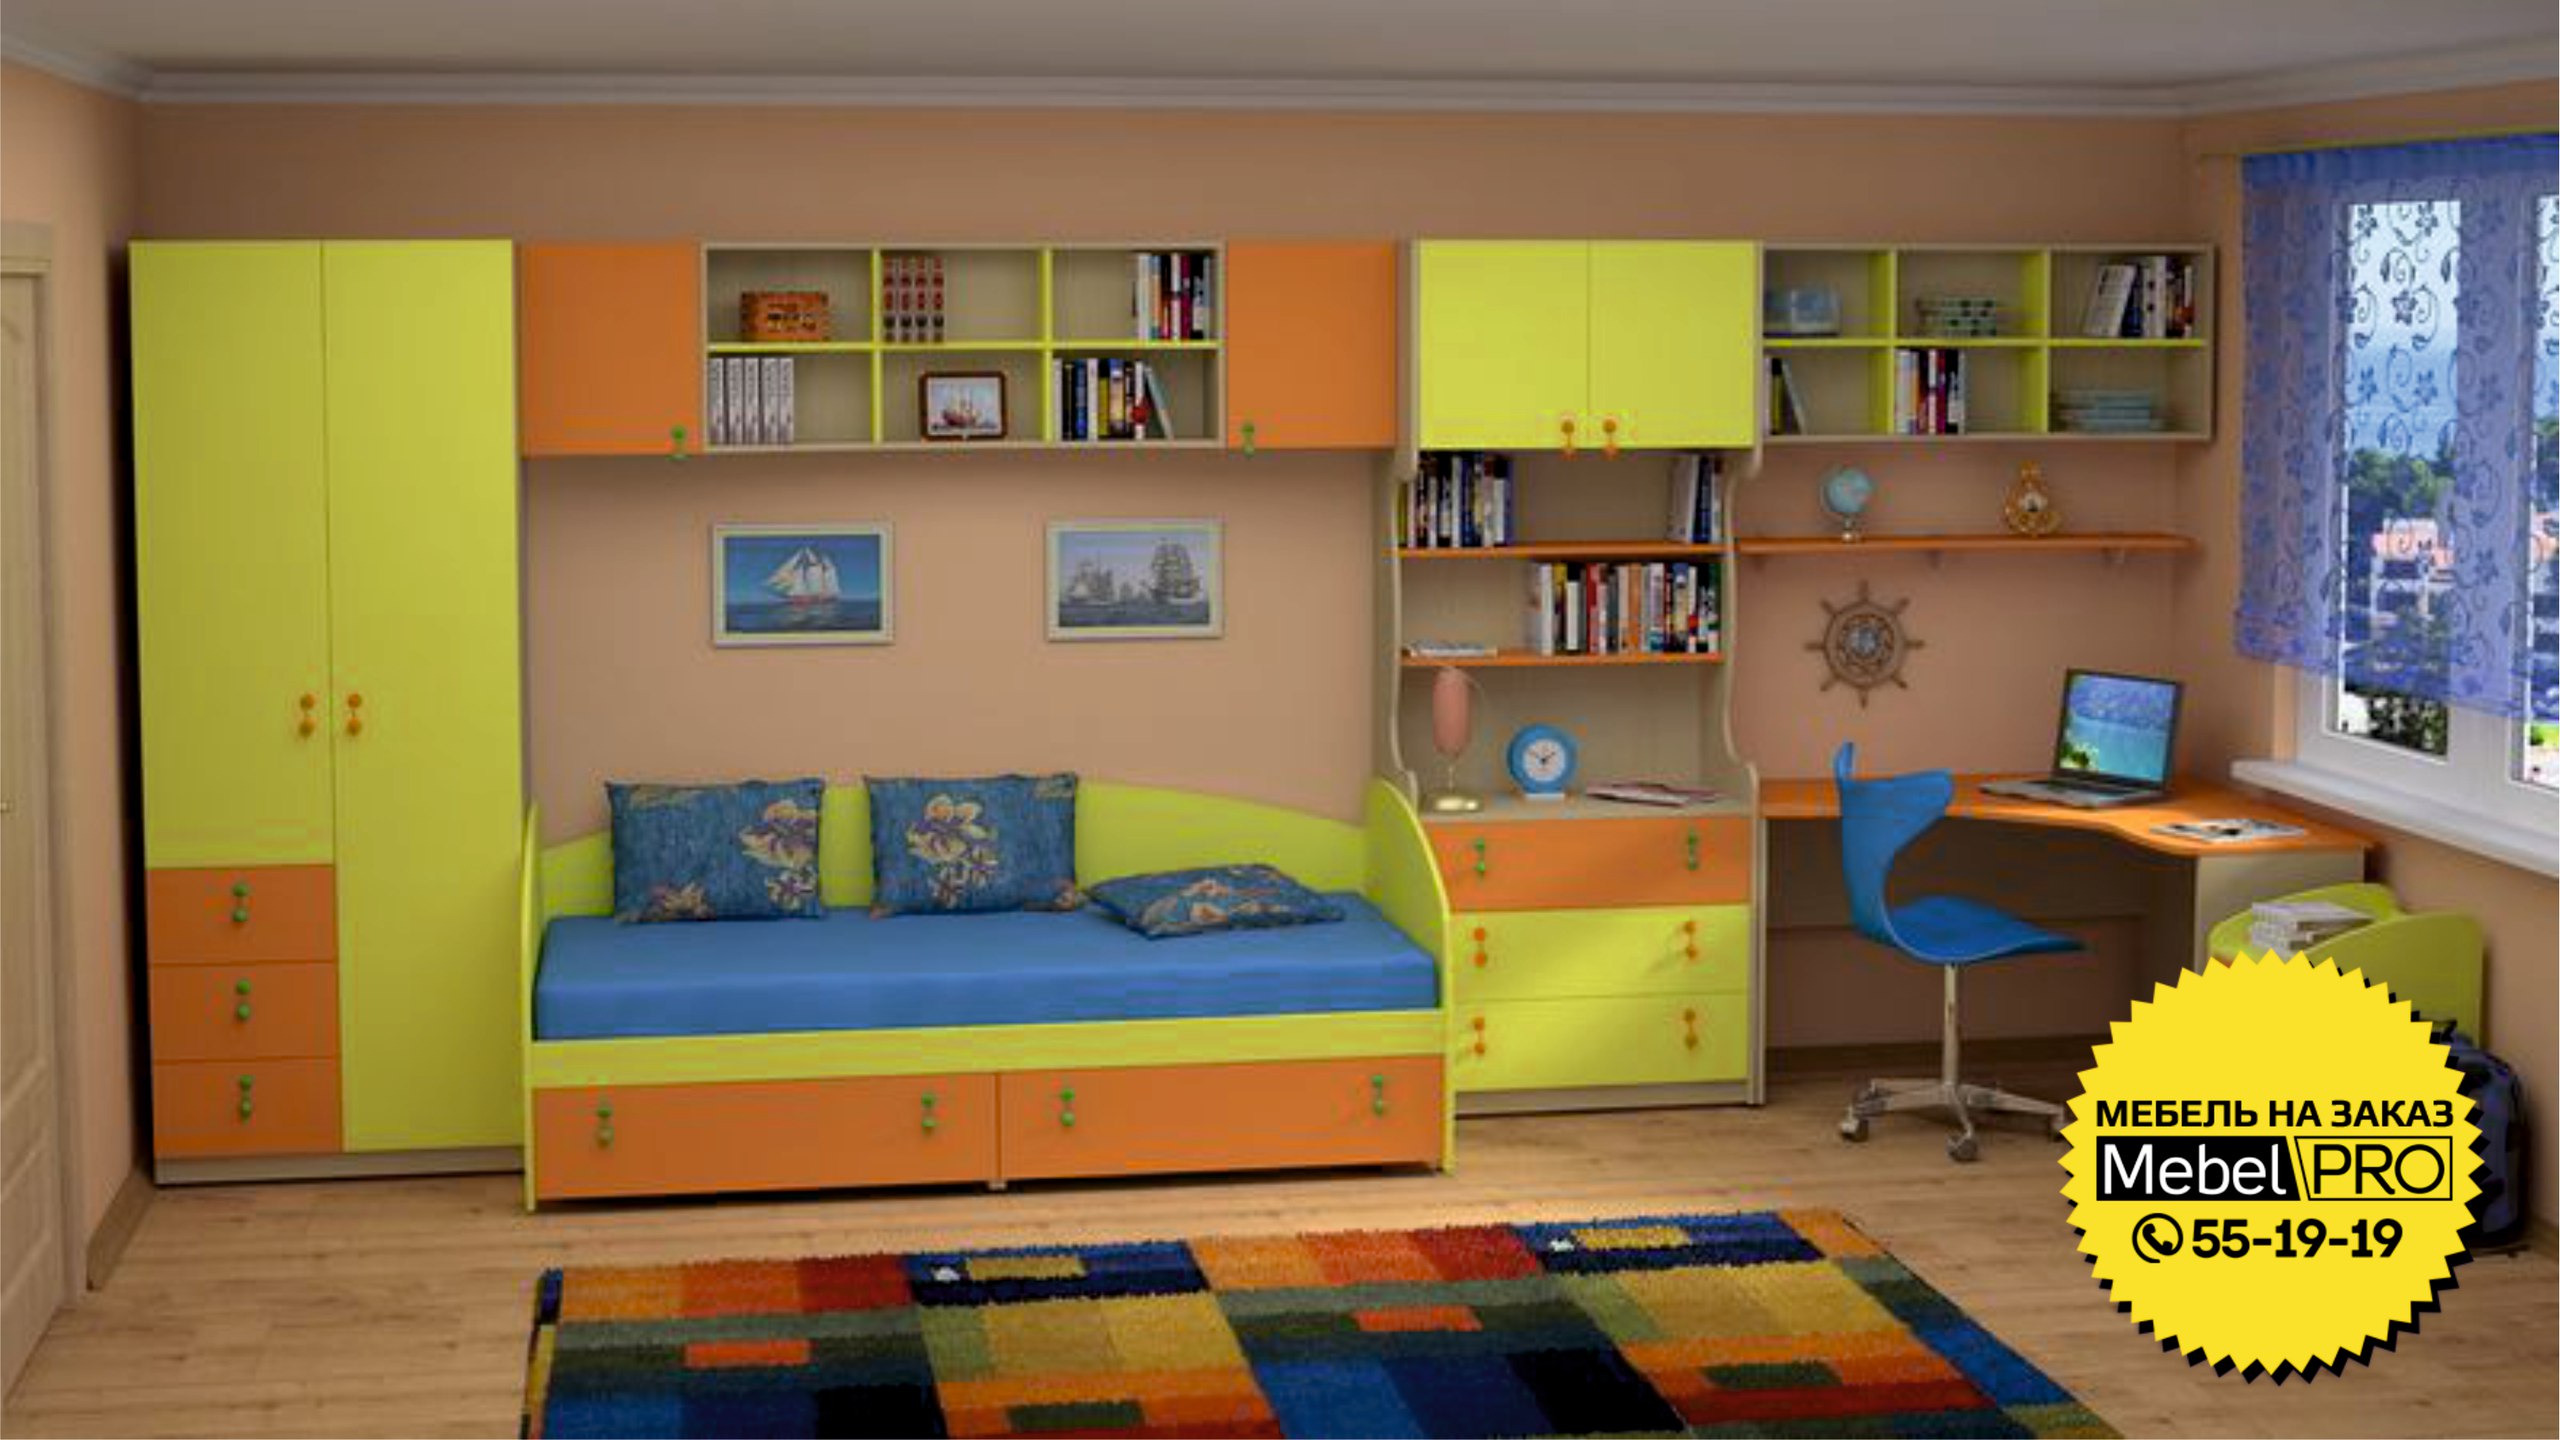 Детская мебель mosmirmebeli com. Мебель в детскую комнату. Мебель для детских комнат. Детские гарнитуры в комнату. Мебель в детскую для мальчика.